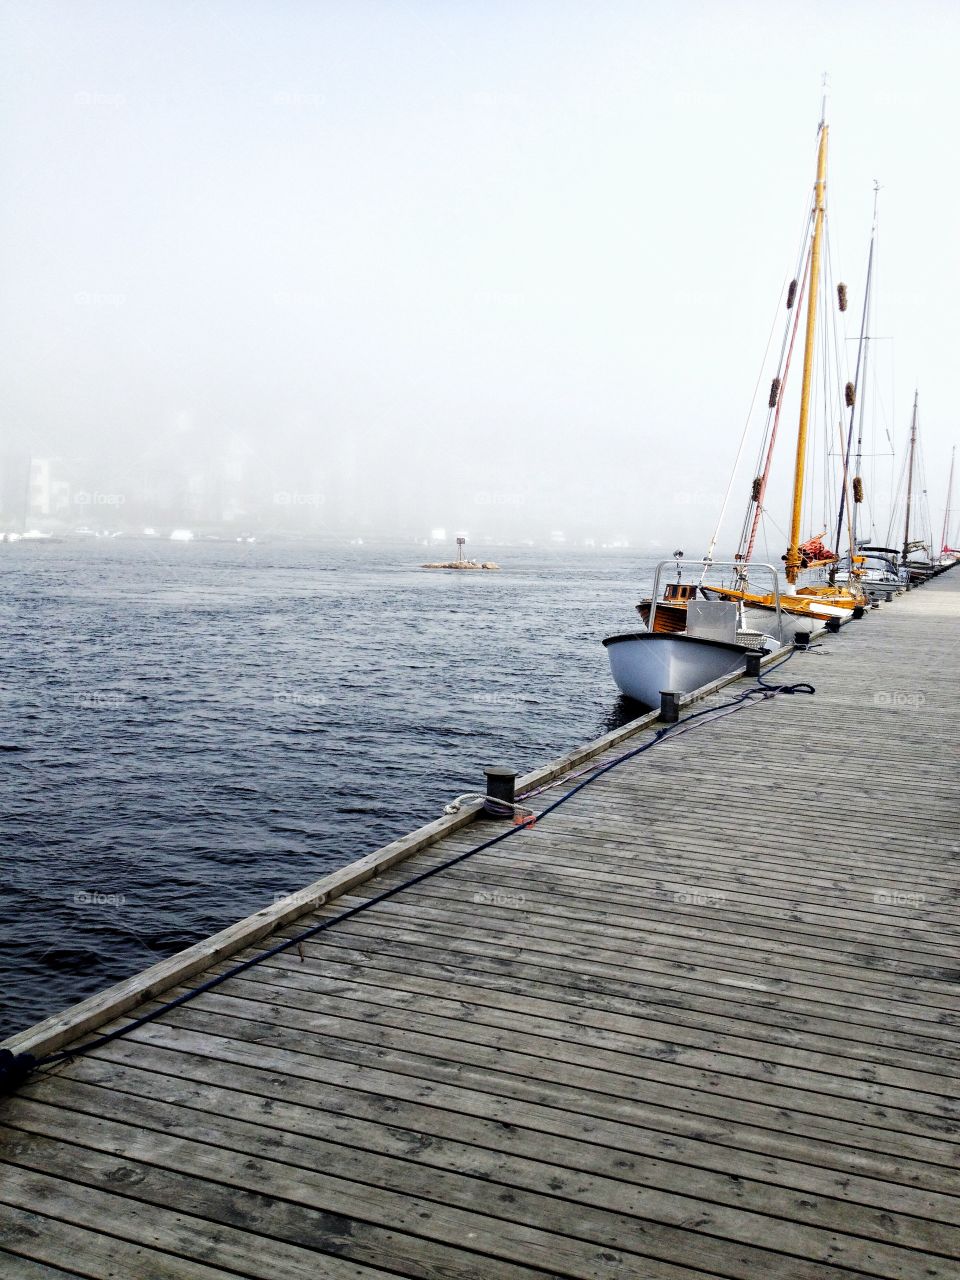 Sea mist